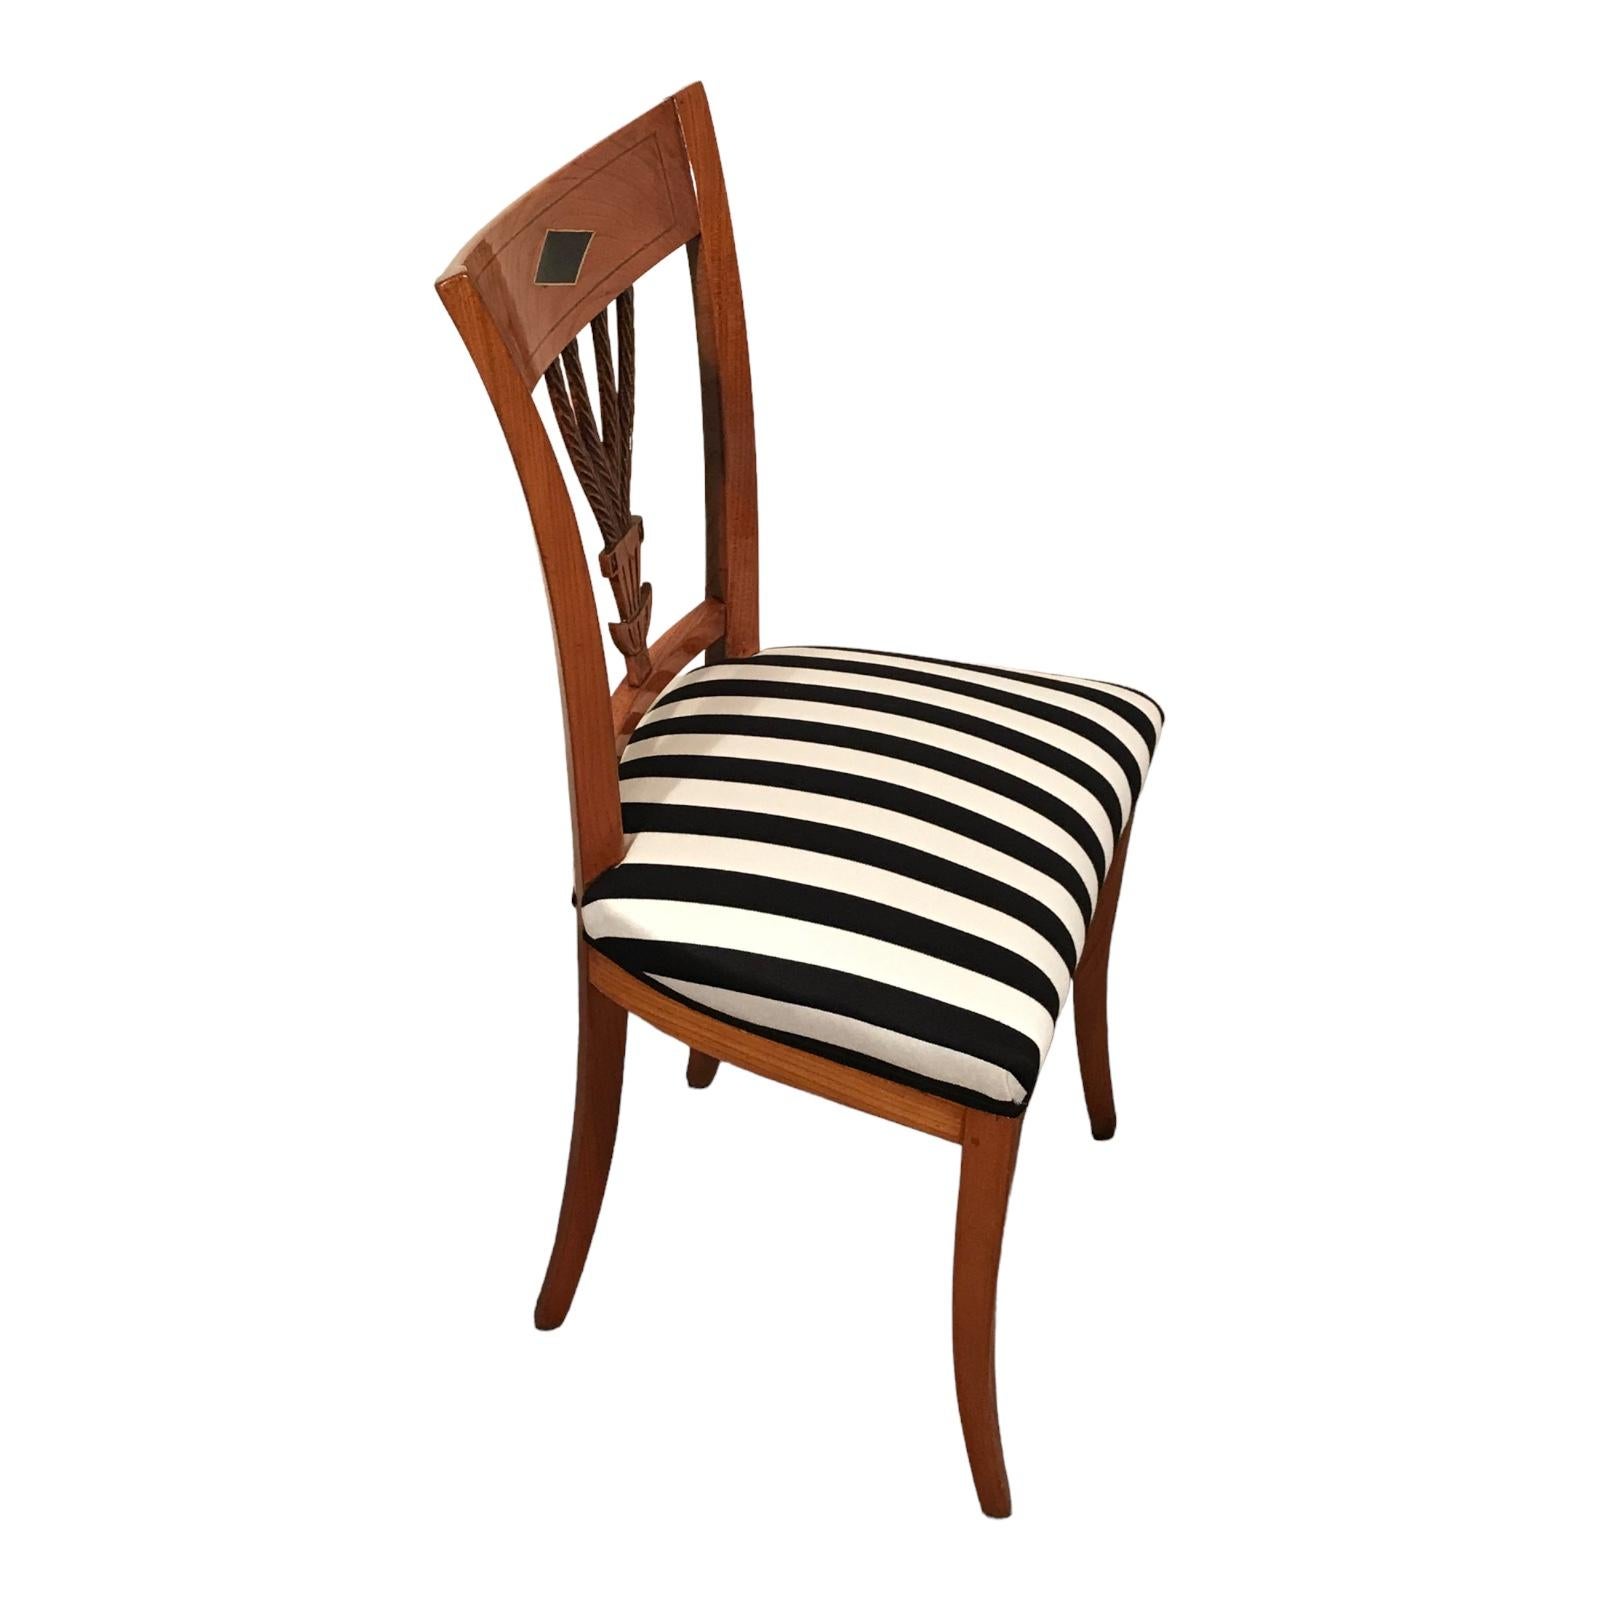 Ensemble de six chaises néoclassiques
Magnifique ensemble de six chaises néoclassiques datant d'environ 1810-30. Les chaises proviennent du sud-ouest de l'Allemagne. Le dos présente un très joli travail ouvert avec un motif de feuilles sculpté à la